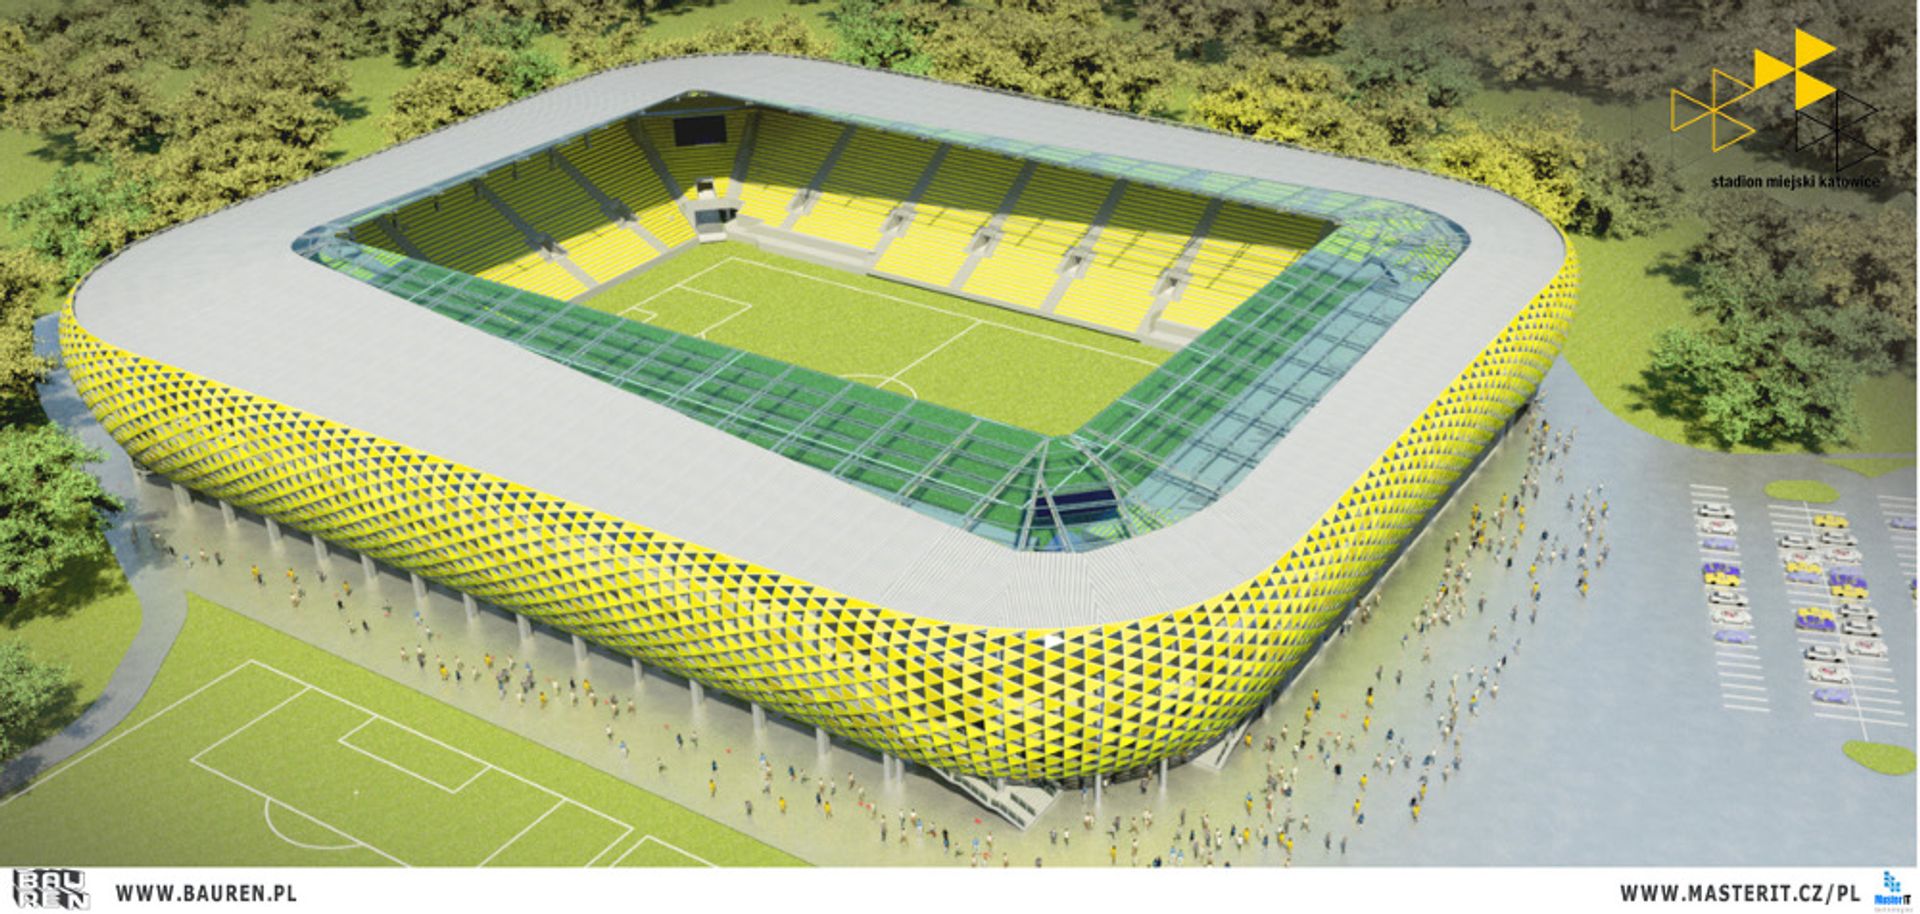  Jak będzie wyglądał stadion GKS-u Katowice przy Bukowej? Są dwie koncepcje